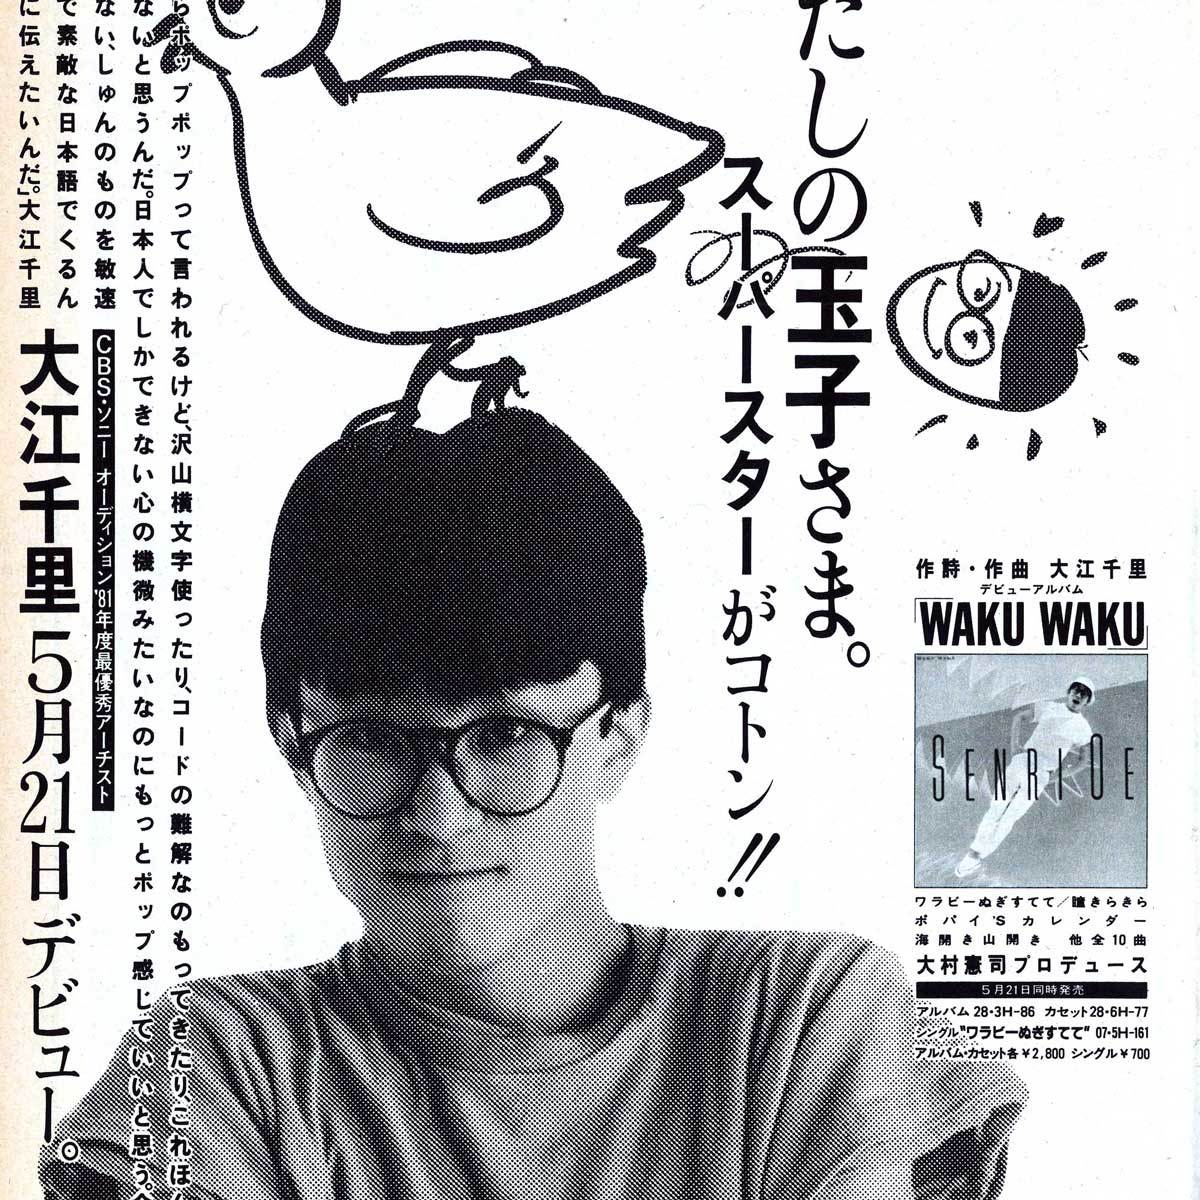 広告『WAKU WAKU』 大江千里 音楽雑誌『GB』1983年7月号より｜otonano ウェブで読める大人の音楽誌